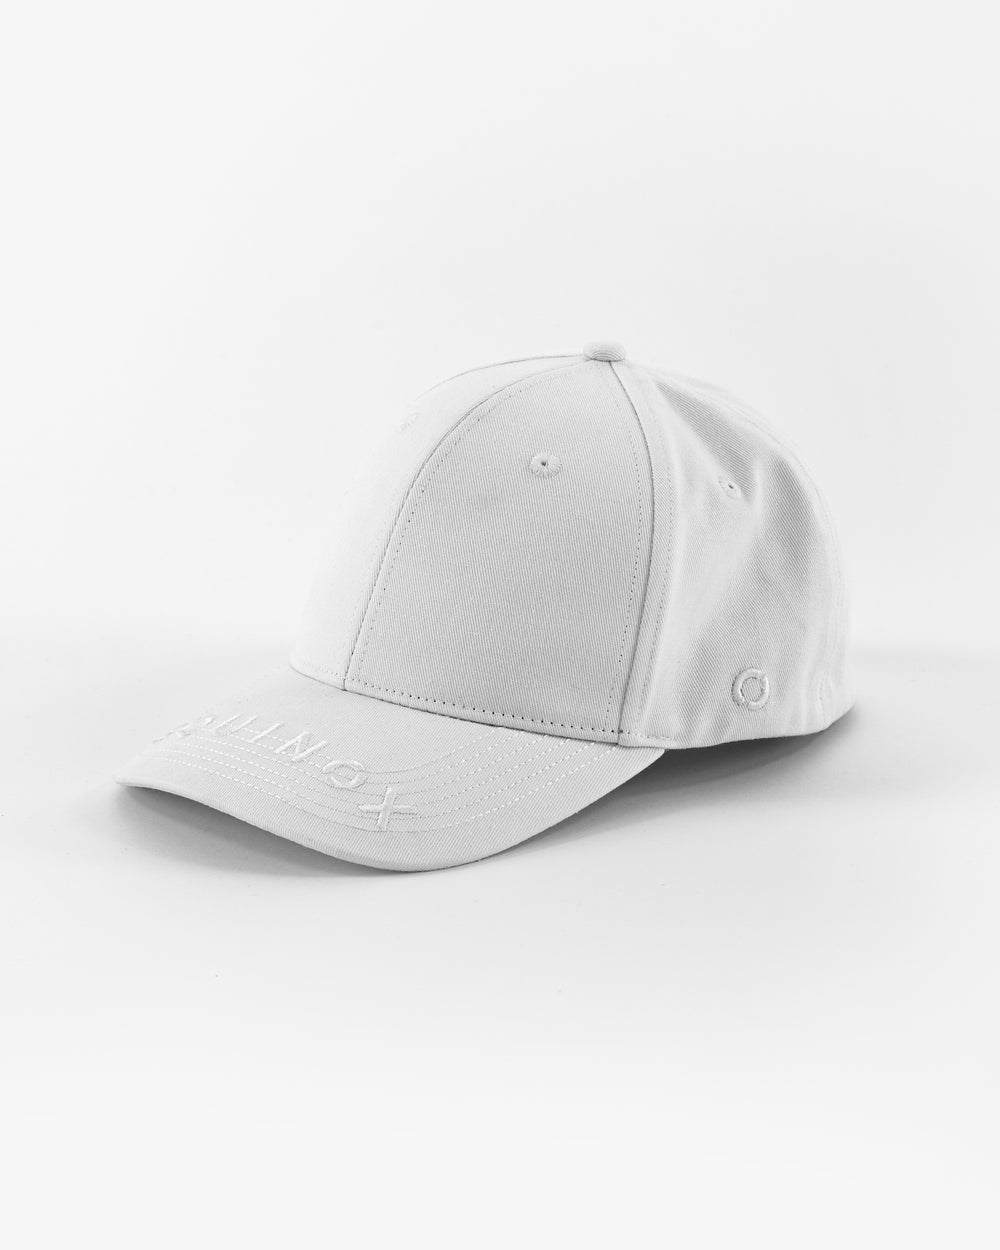 Equinox Flex Fit Visor Logo Hat – The Shop at Equinox